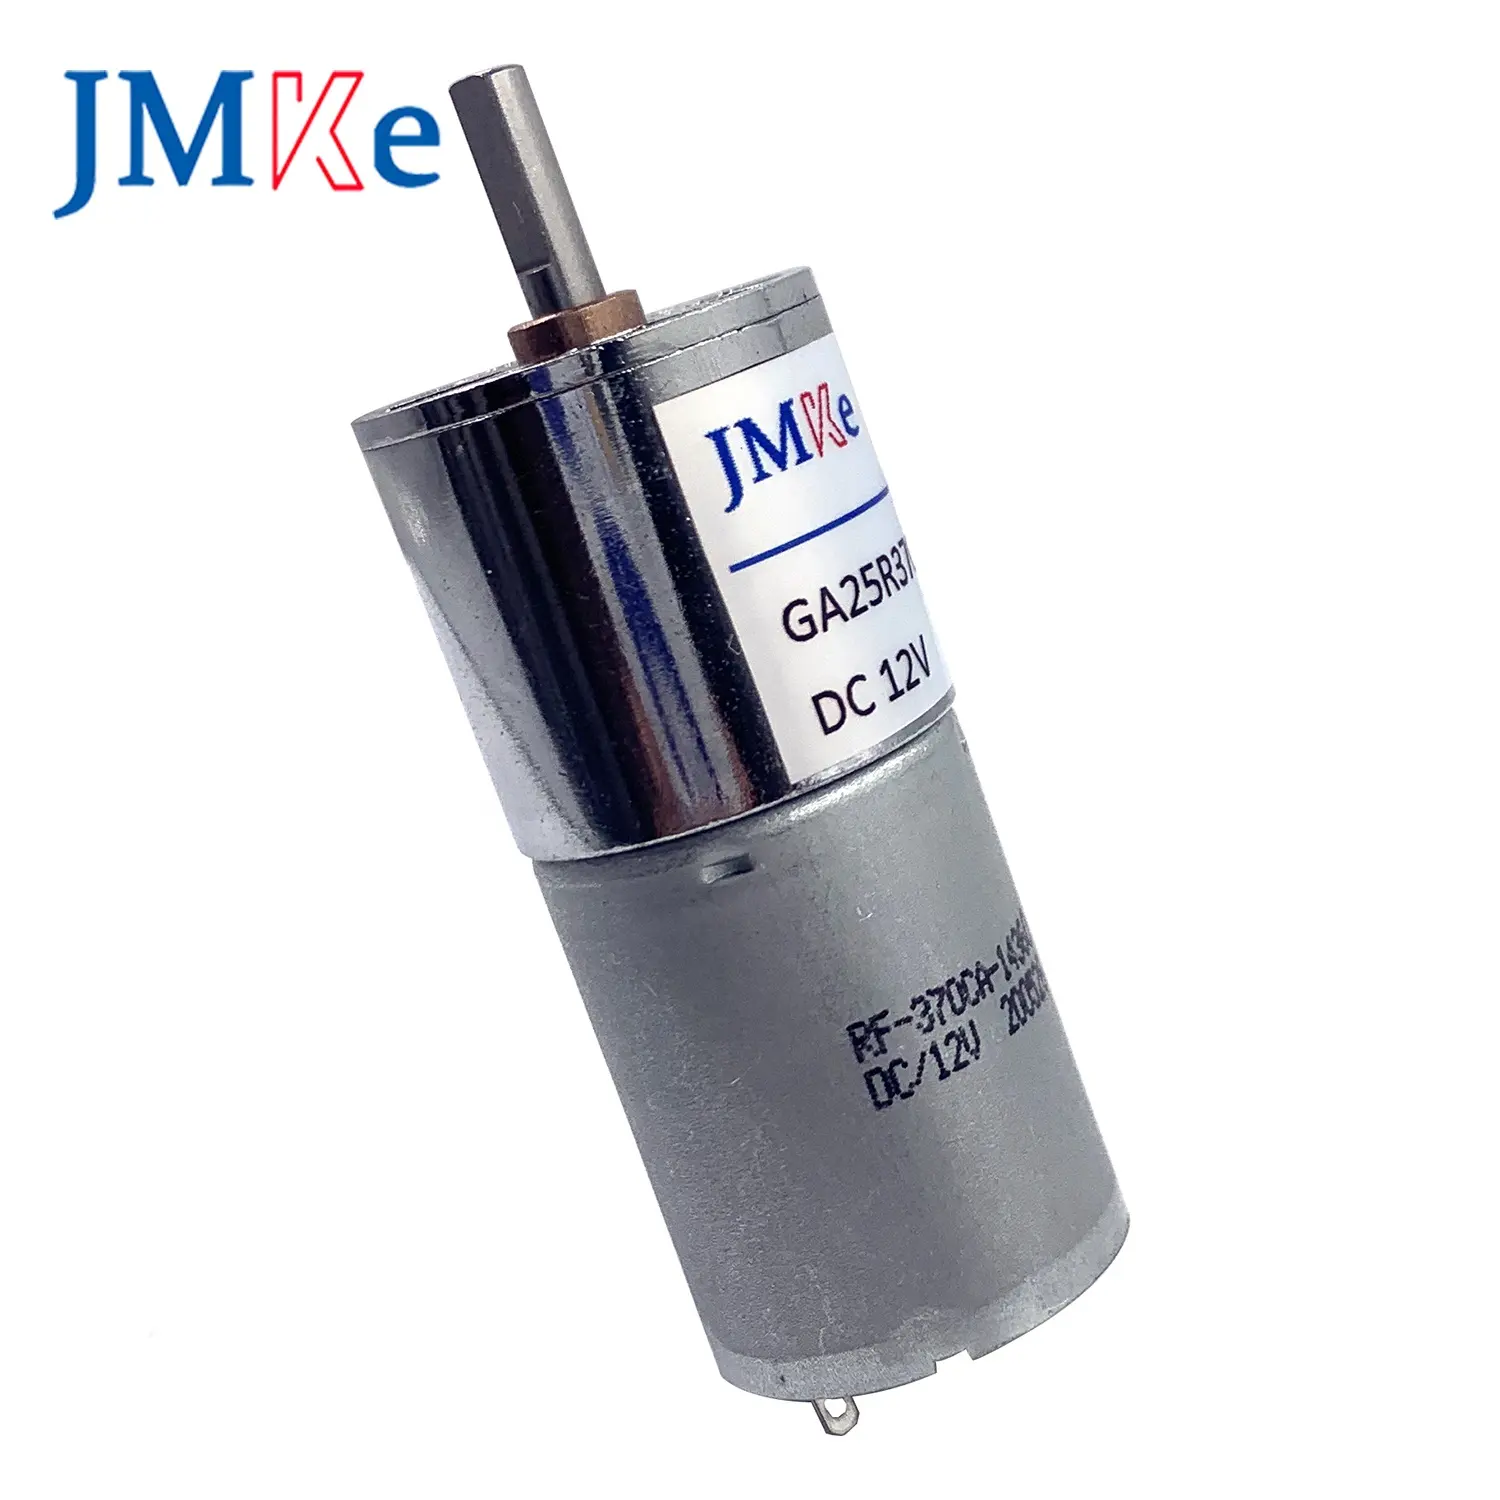 Jmke motor, caixa de engrenagem, motor com engrenagem de redução para atuador, máquina de venda, 25mm 6v 12v 24v